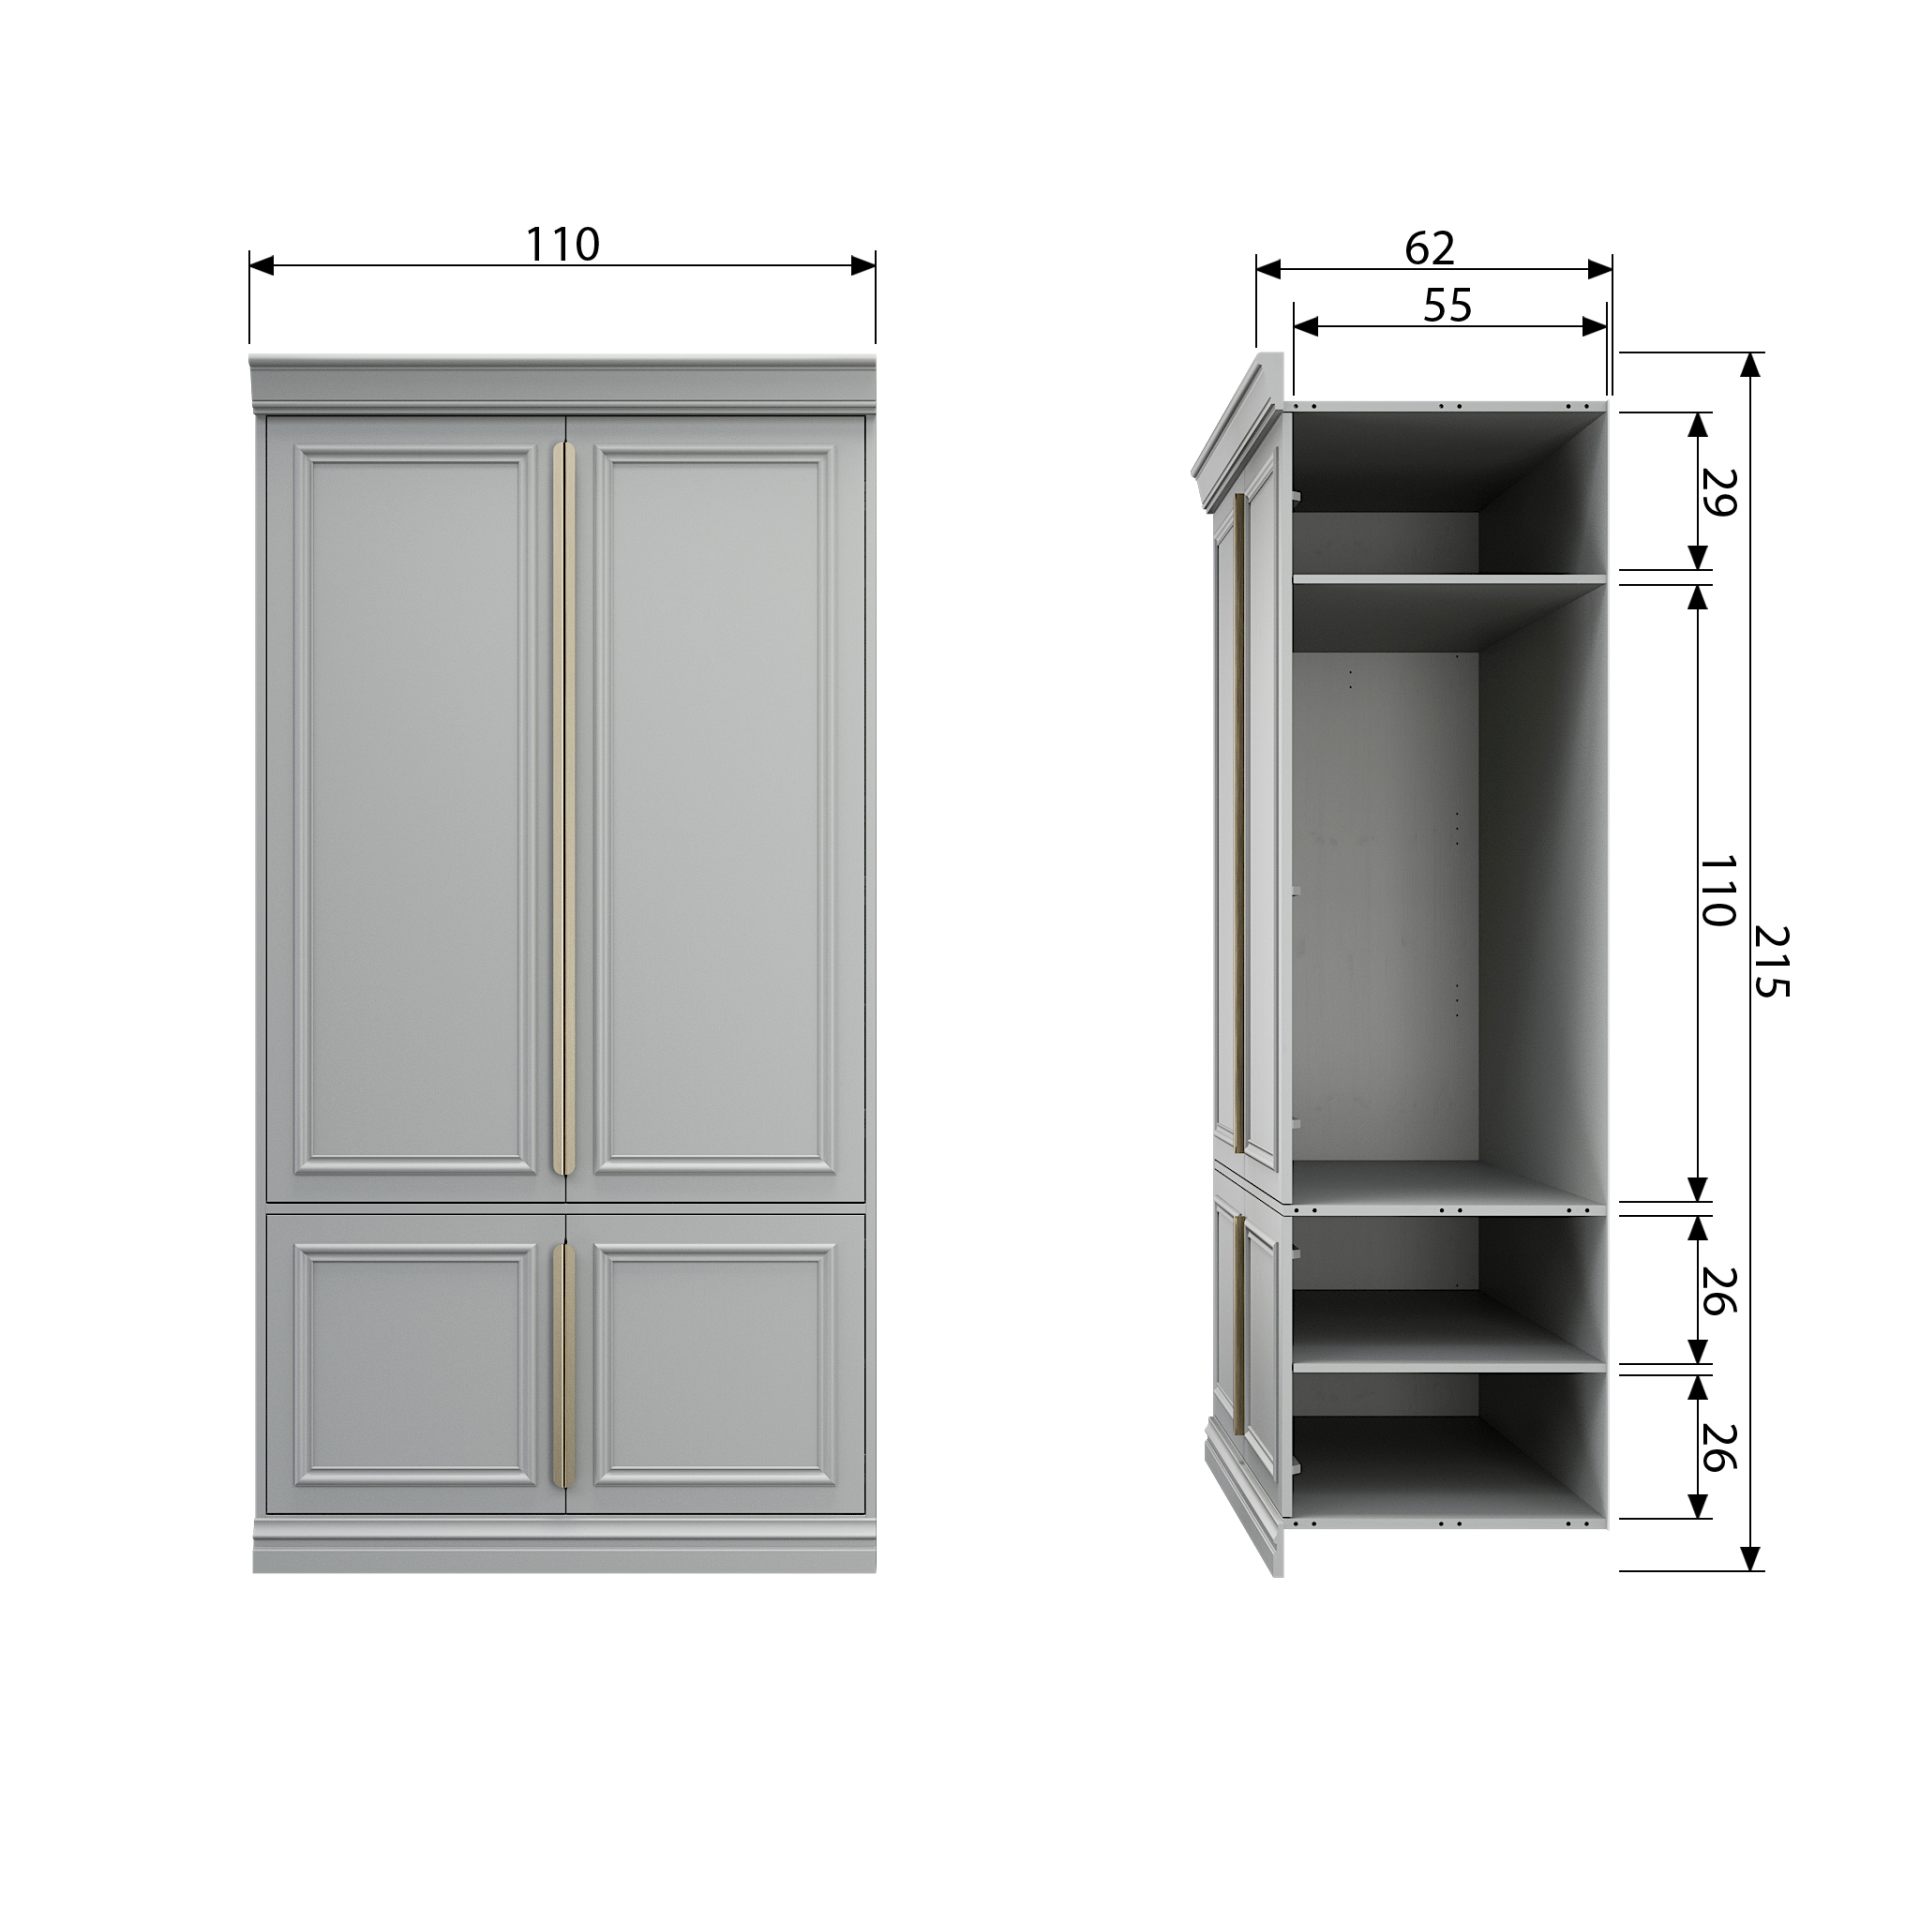 Der Schrank Organzie wurde aus Kiefernholz gefertigt, welches einen weißen Farbton besitzt. Der Schrank verfügt über vier Türen mit Fächern im Inneren für ausreichend Stauraum.